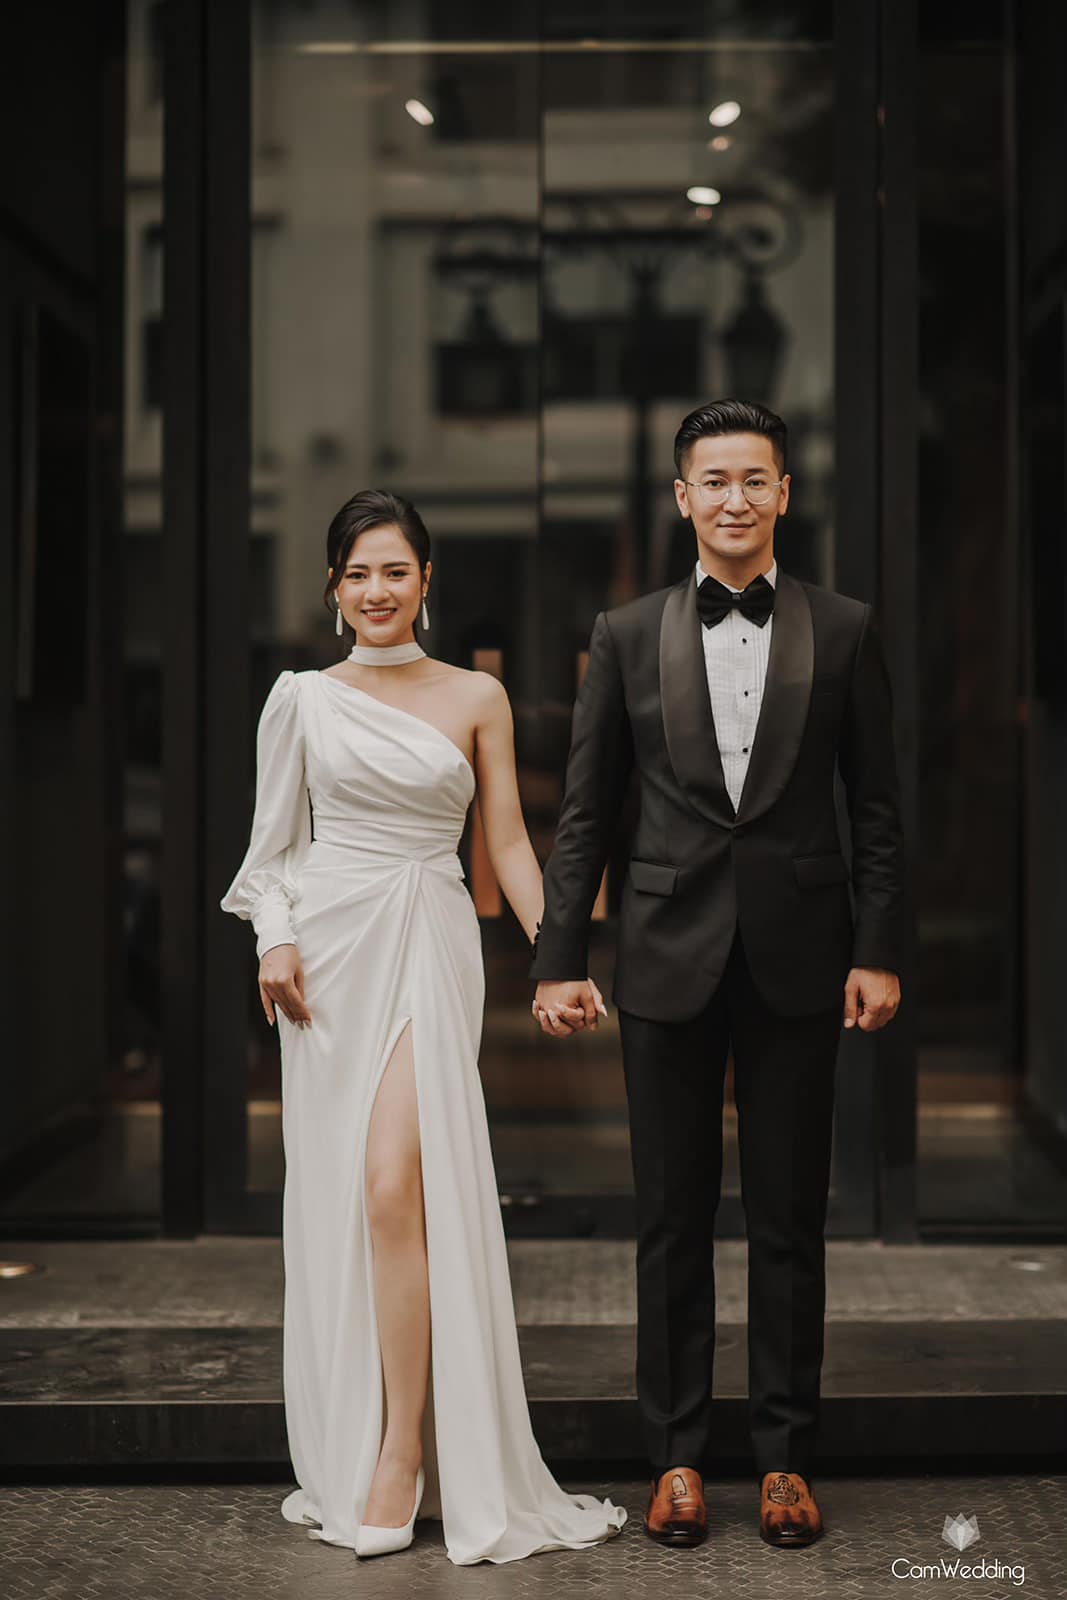 Việt Hoa 'Em gái Phương Oanh' tung bộ ảnh đẹp lung linh với bạn trai khiến netizen cứ ngỡ ảnh cưới - Ảnh 4